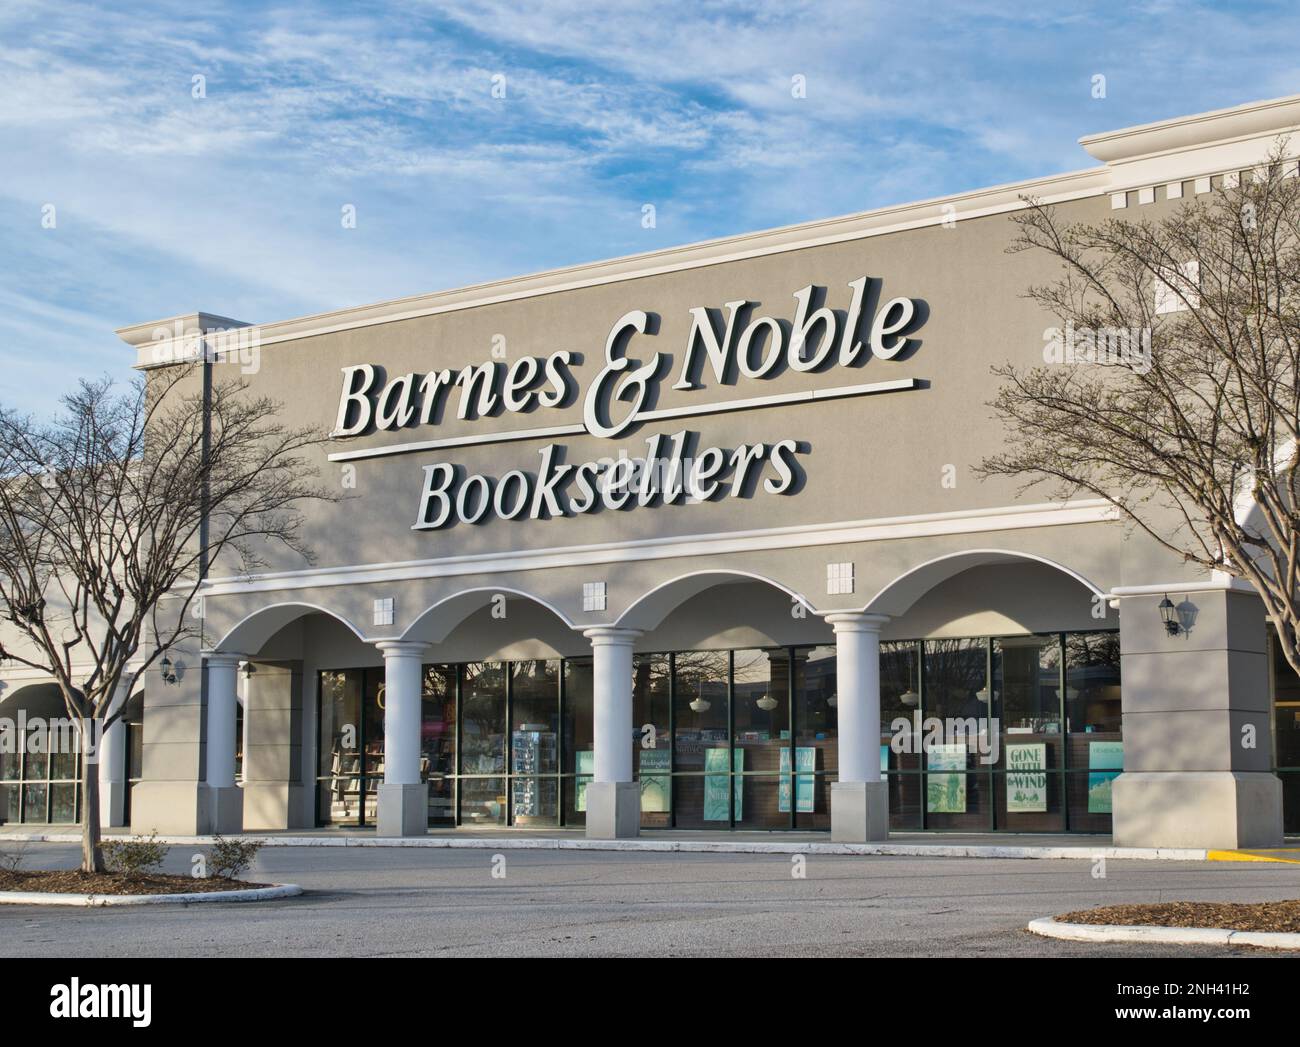 Houston, Texas États-Unis 02-17-2023: Boutique Barnes and Noble Booksellers à Houston, Texas. La plus grande chaîne de magasins de livres des États-Unis, fondée en 1886. Banque D'Images